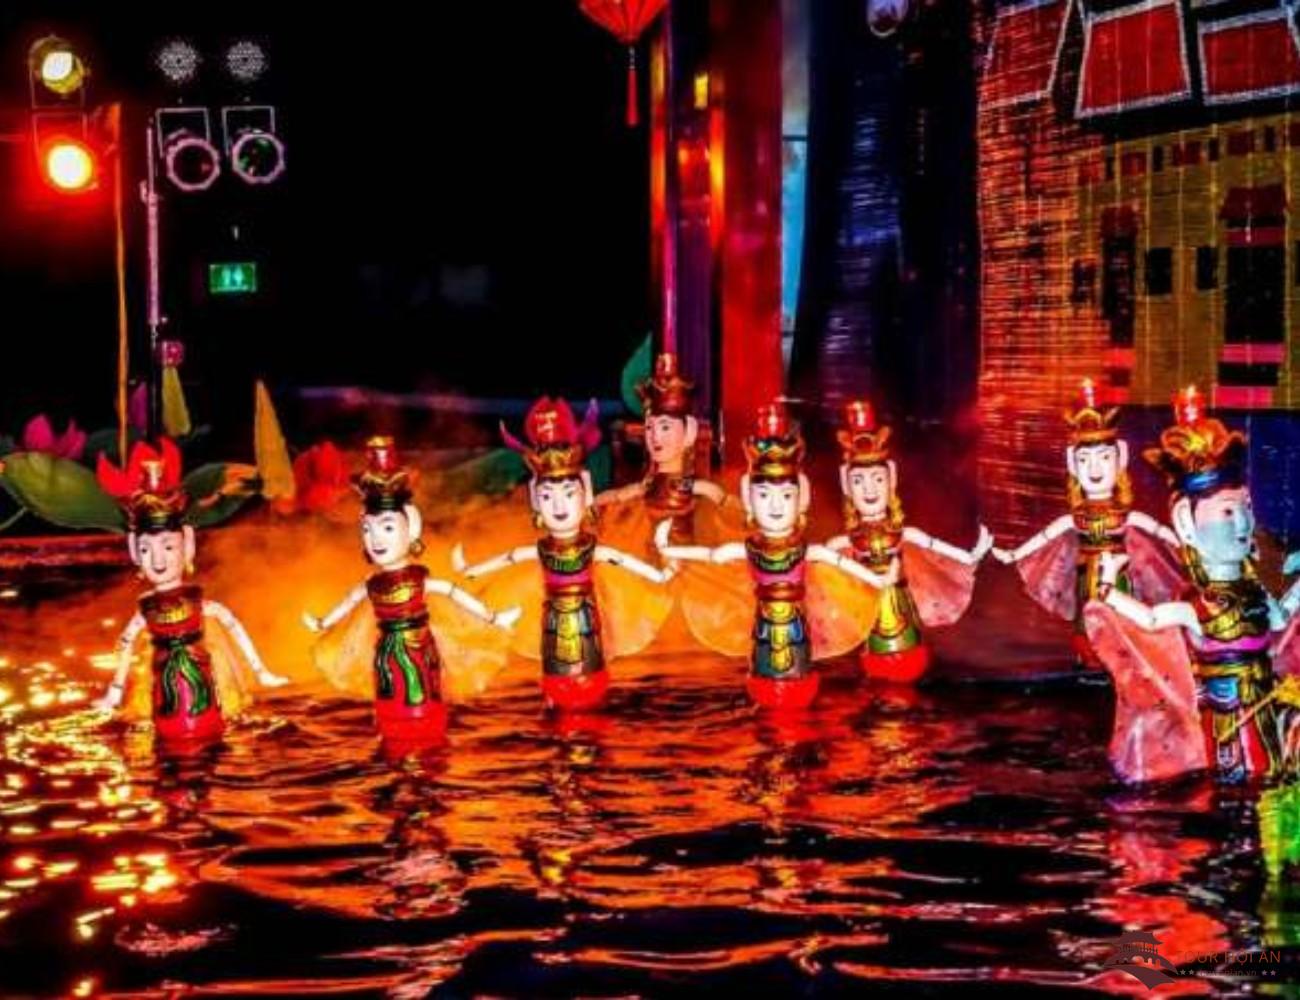 Lễ hội múa rối nước trải nghiệm văn hóa độc đáo truyền thống